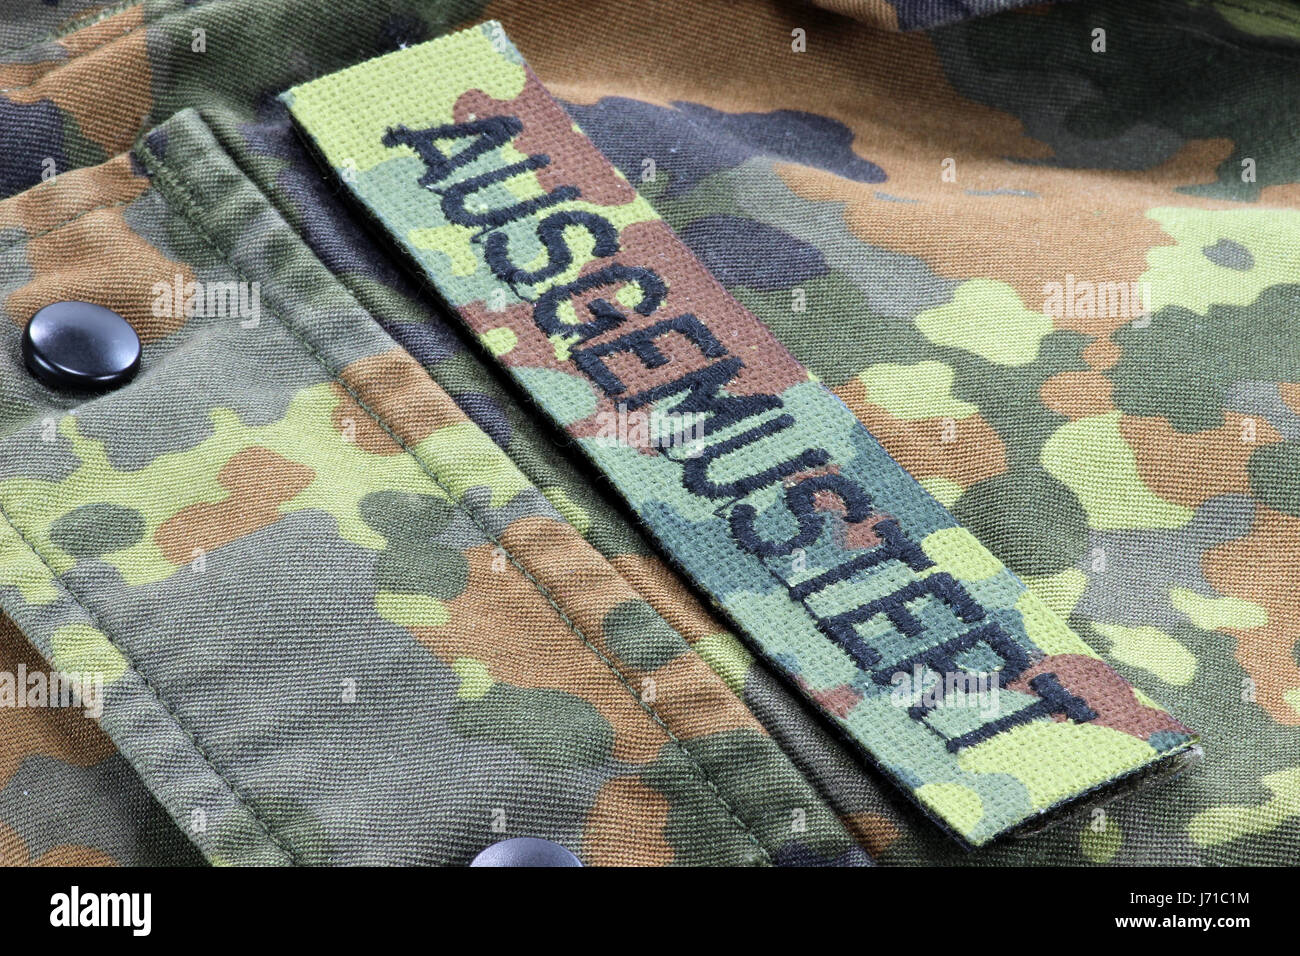 Veste camouflage allemand patched retiré du service au lieu de l'étiquette-nom Banque D'Images